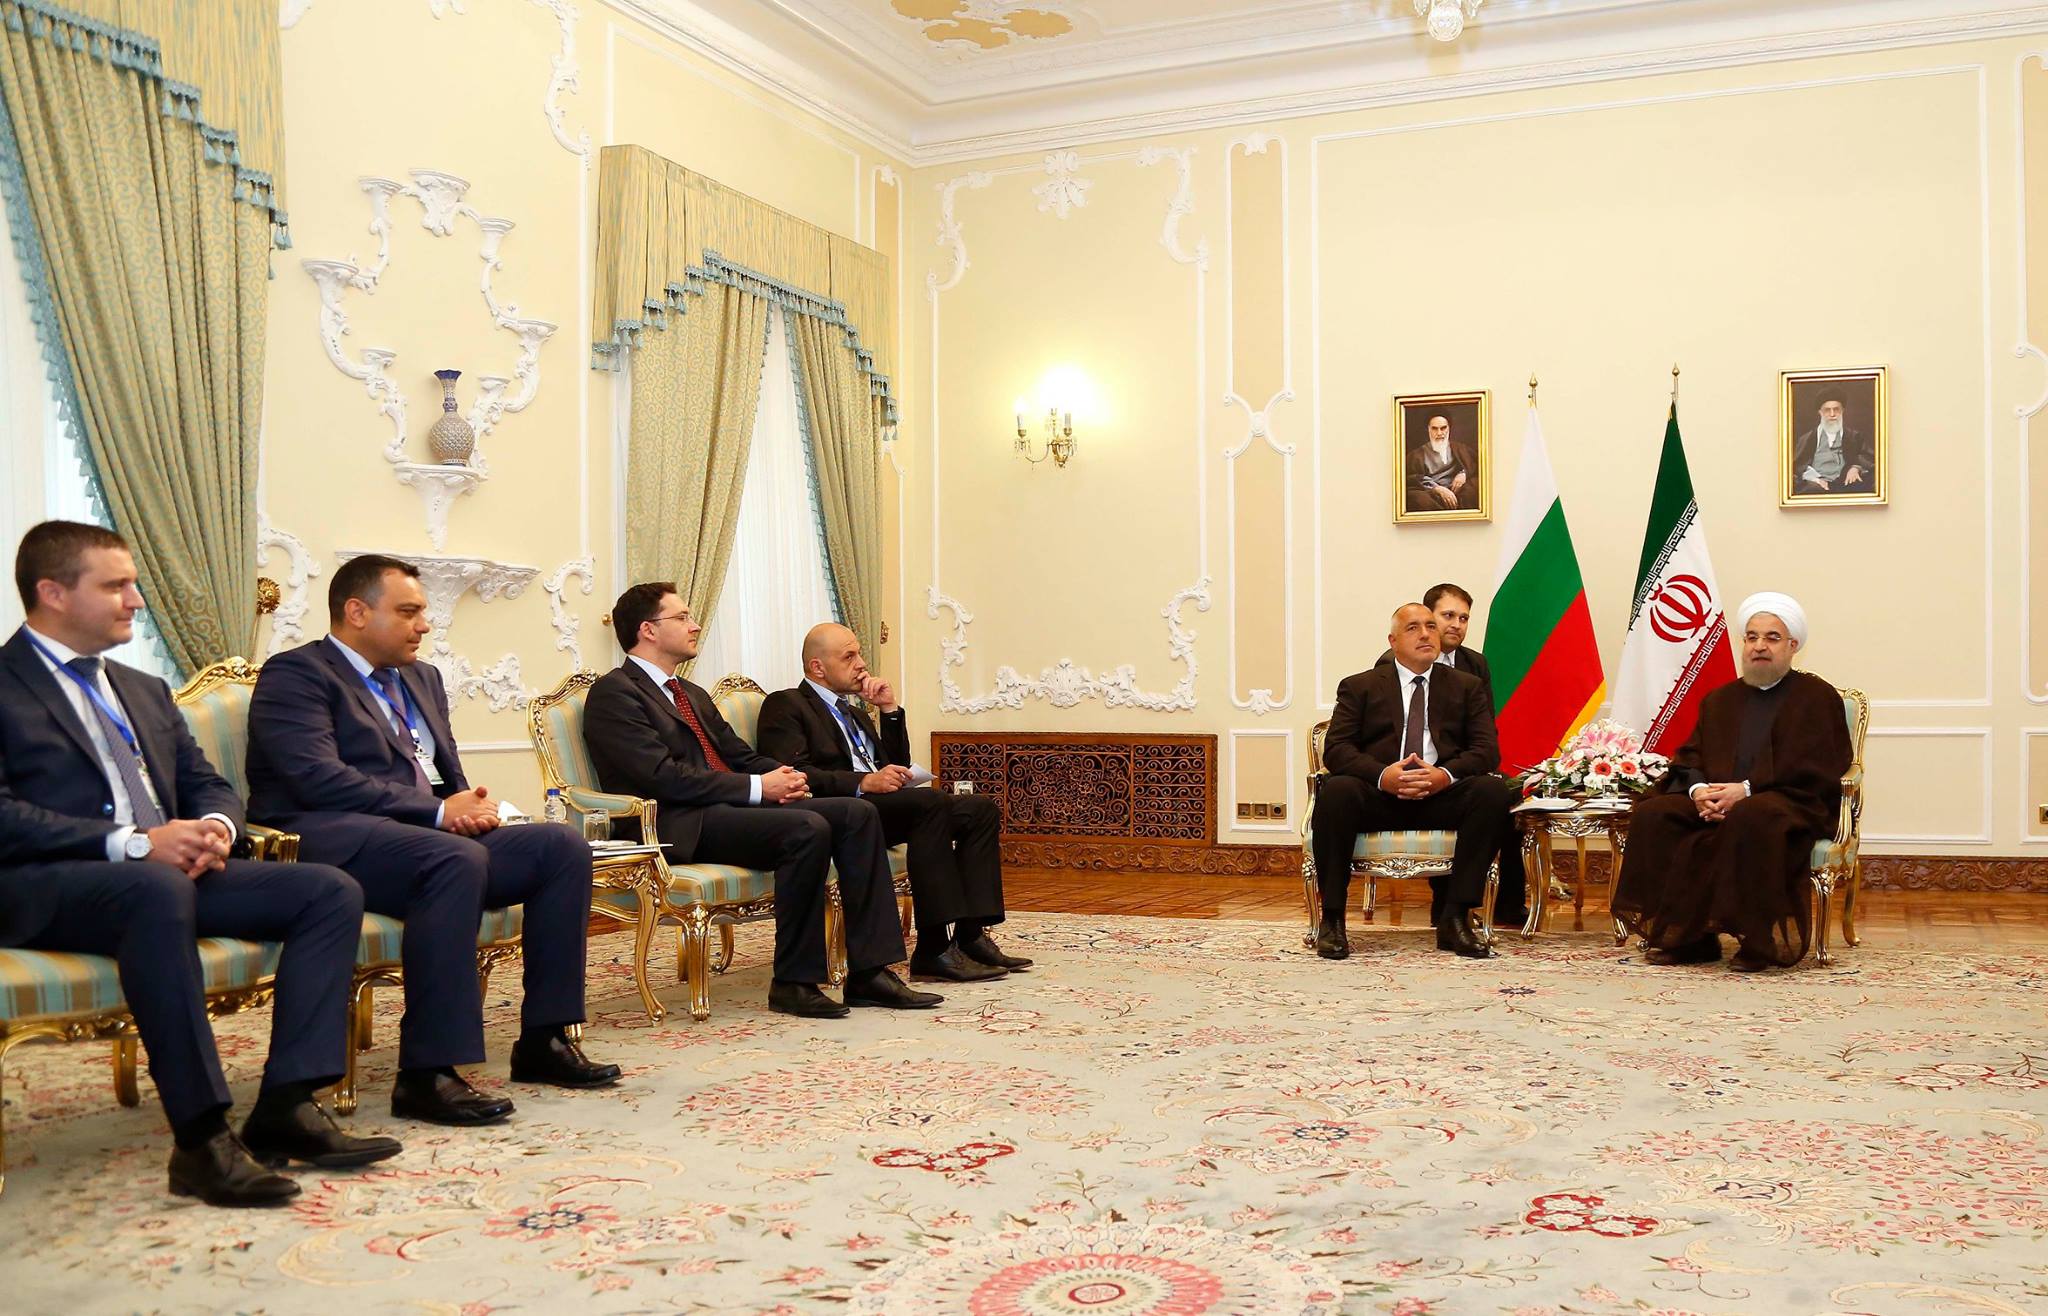 Бойко Борисов и министри на среща  с президента на Ислямската република Хасан Рохани